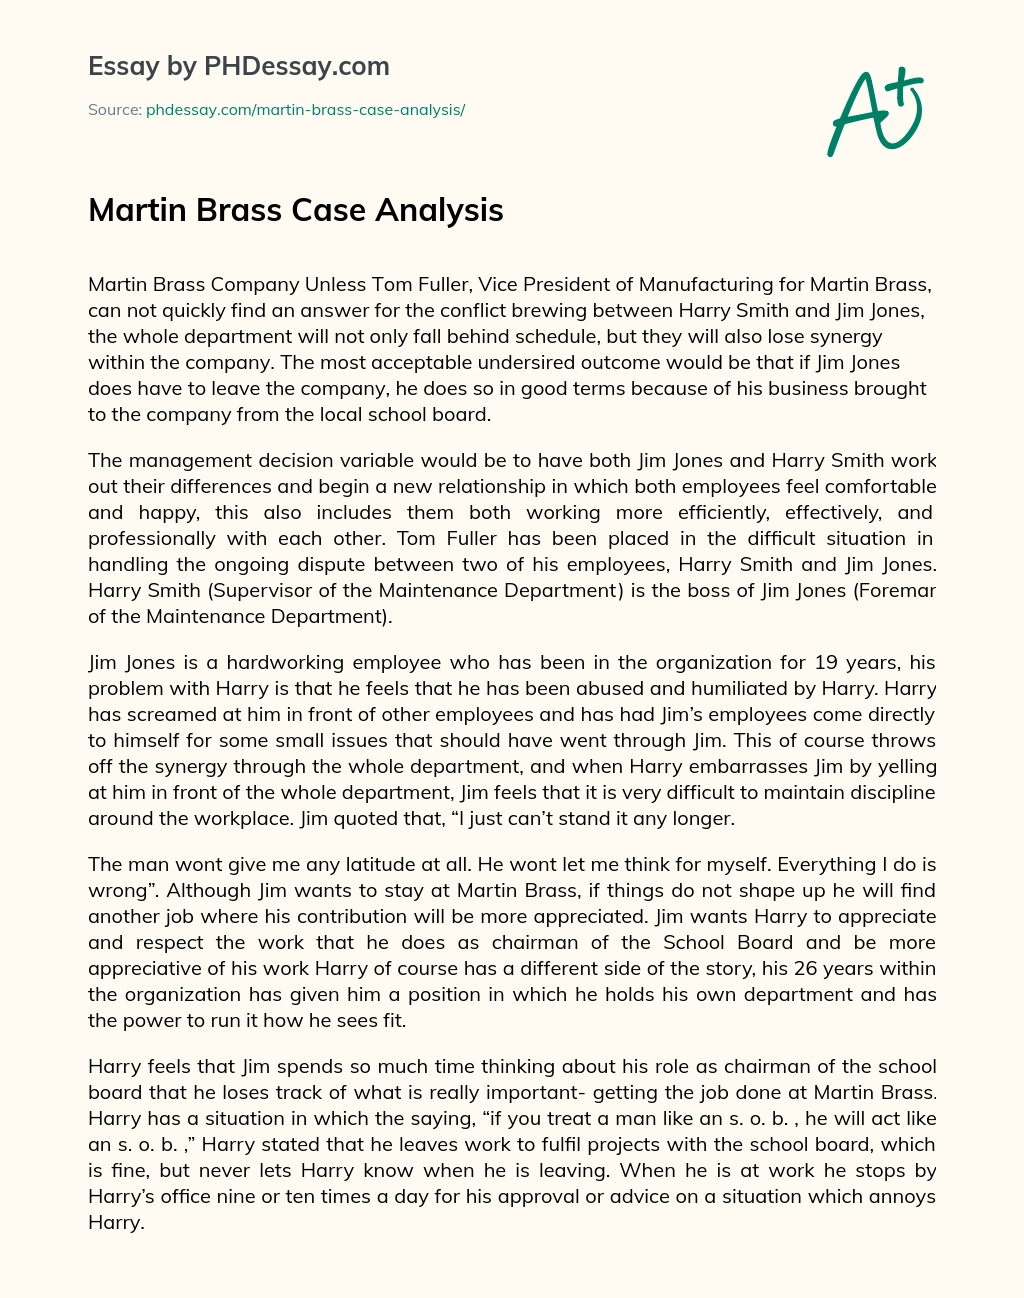 Martin Brass Case Analysis essay